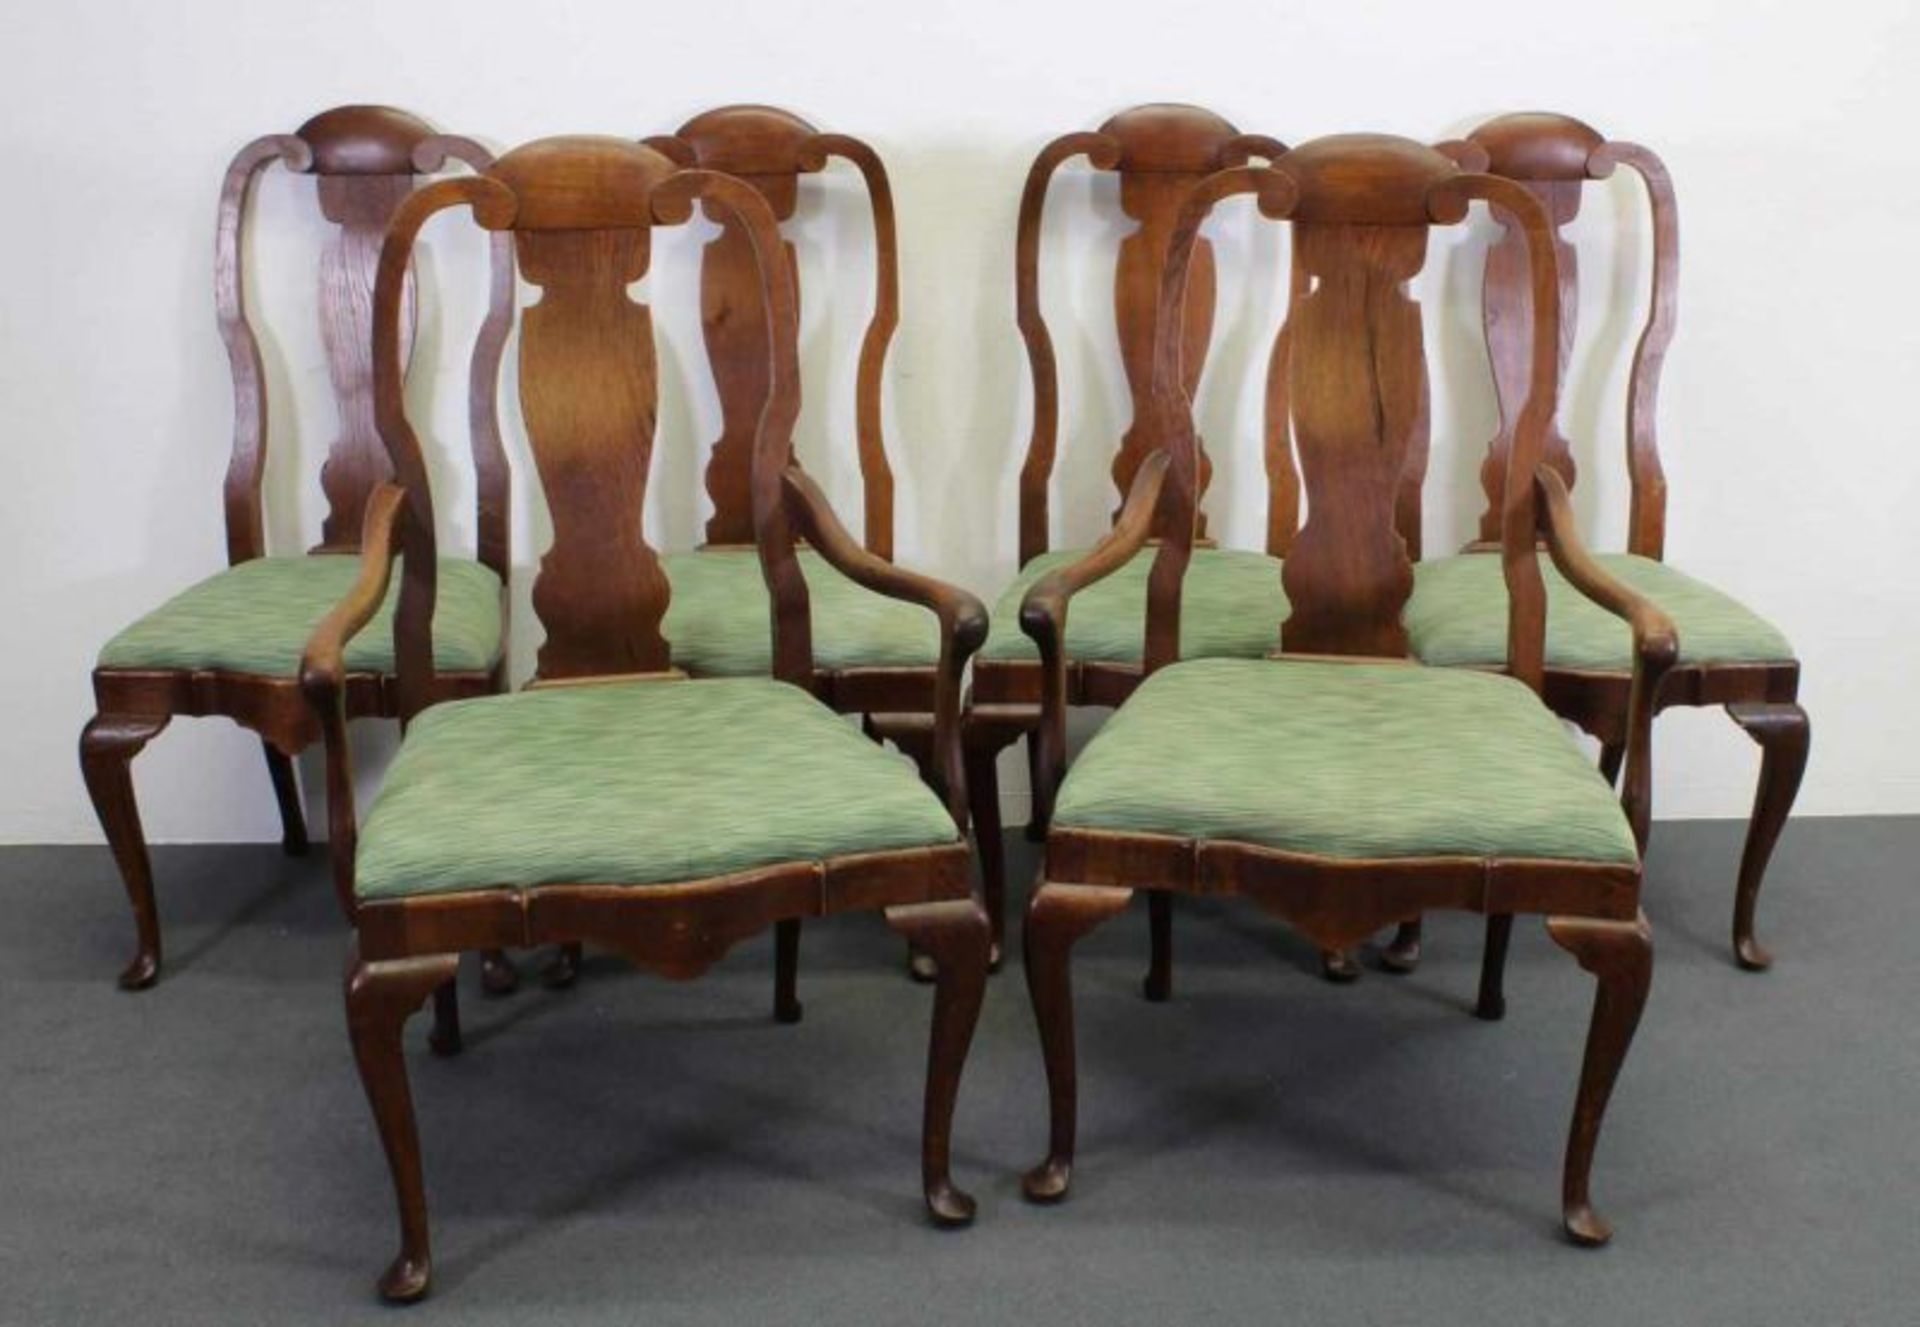 4 Stühle, 2 Armstühle, England, 19. Jh., Queen Anne Stil, Eiche, Sitzpolster 20.00 % buyer's premium